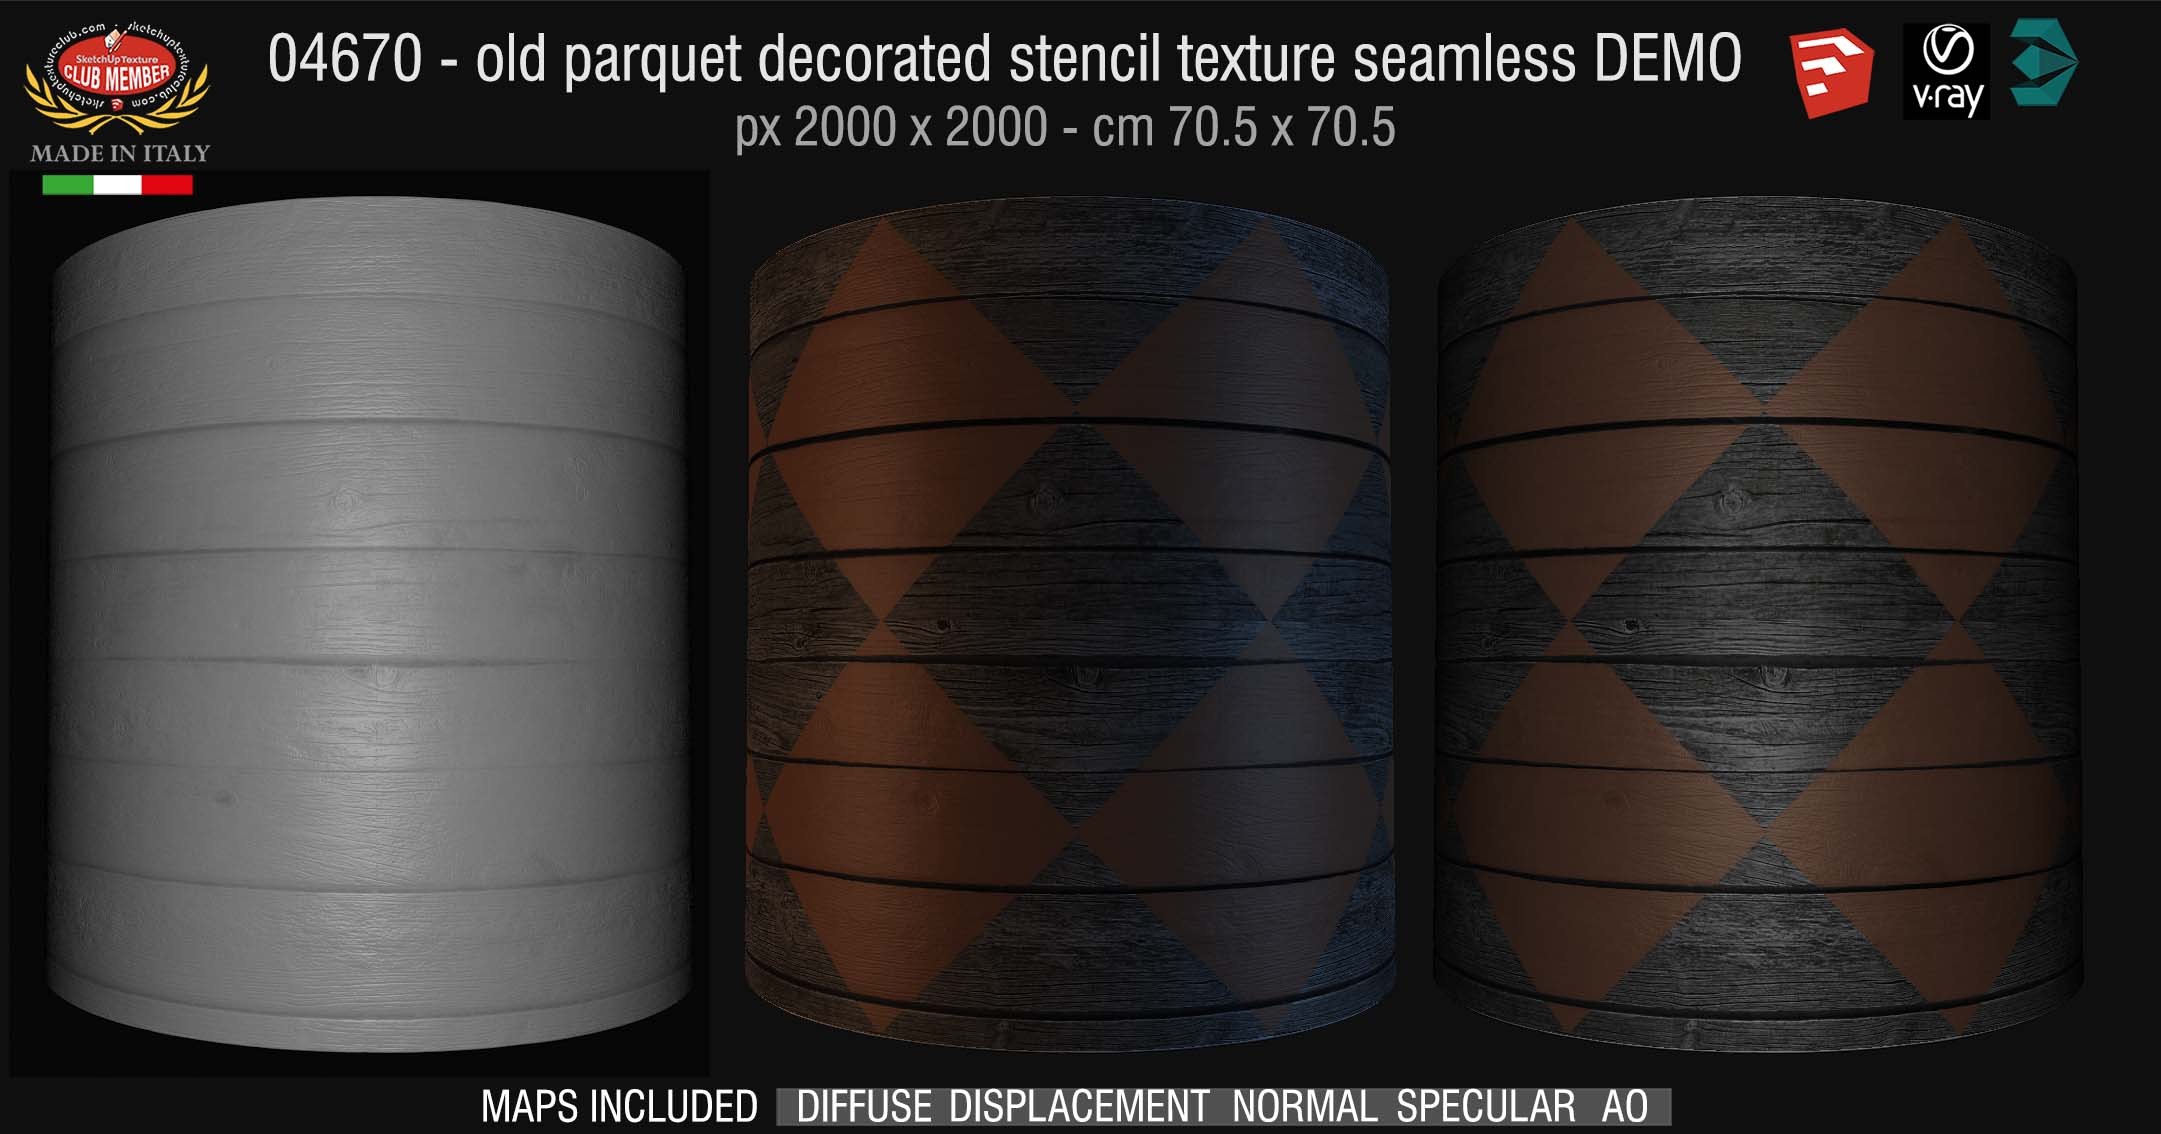 04670 HR Parquet decorated stencil texture seamless + maps DEMO